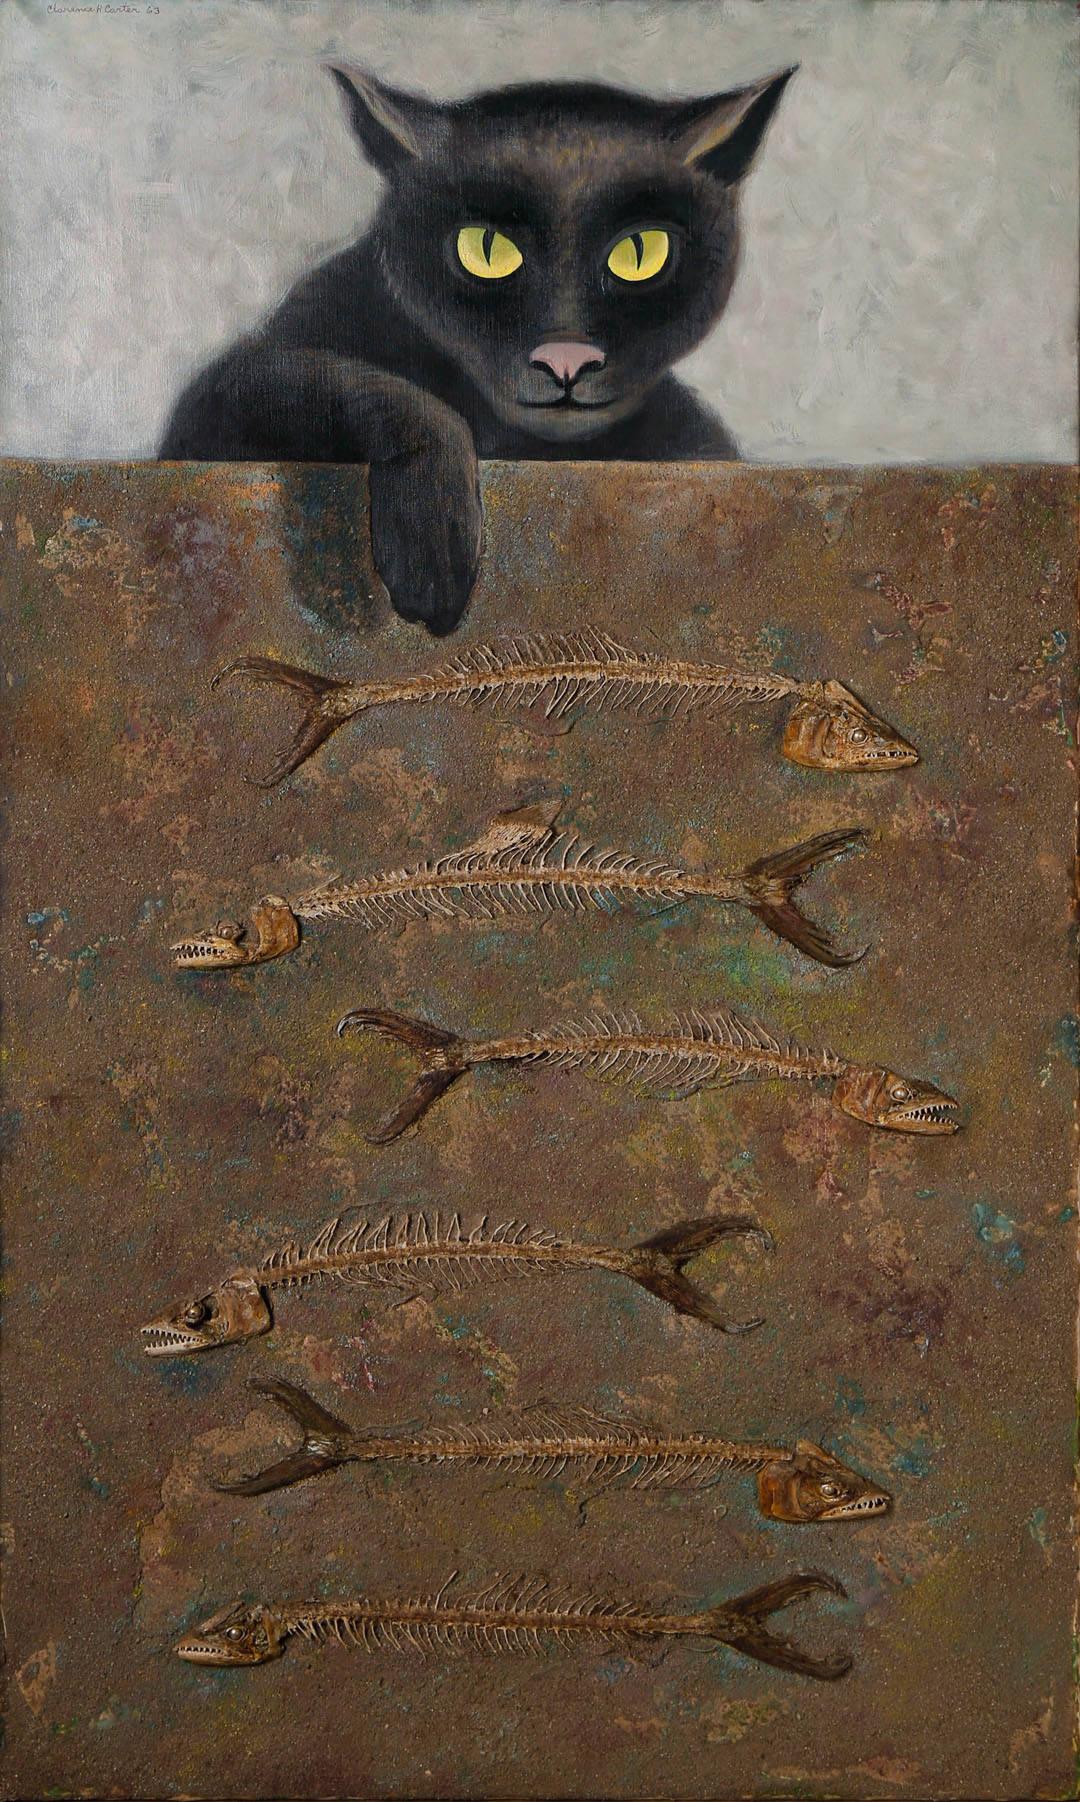 Over and Above : n° 6, chat surréaliste avec os de poissons, école de Cleveland du 20e siècle - Modernisme américain Painting par Clarence Holbrook Carter